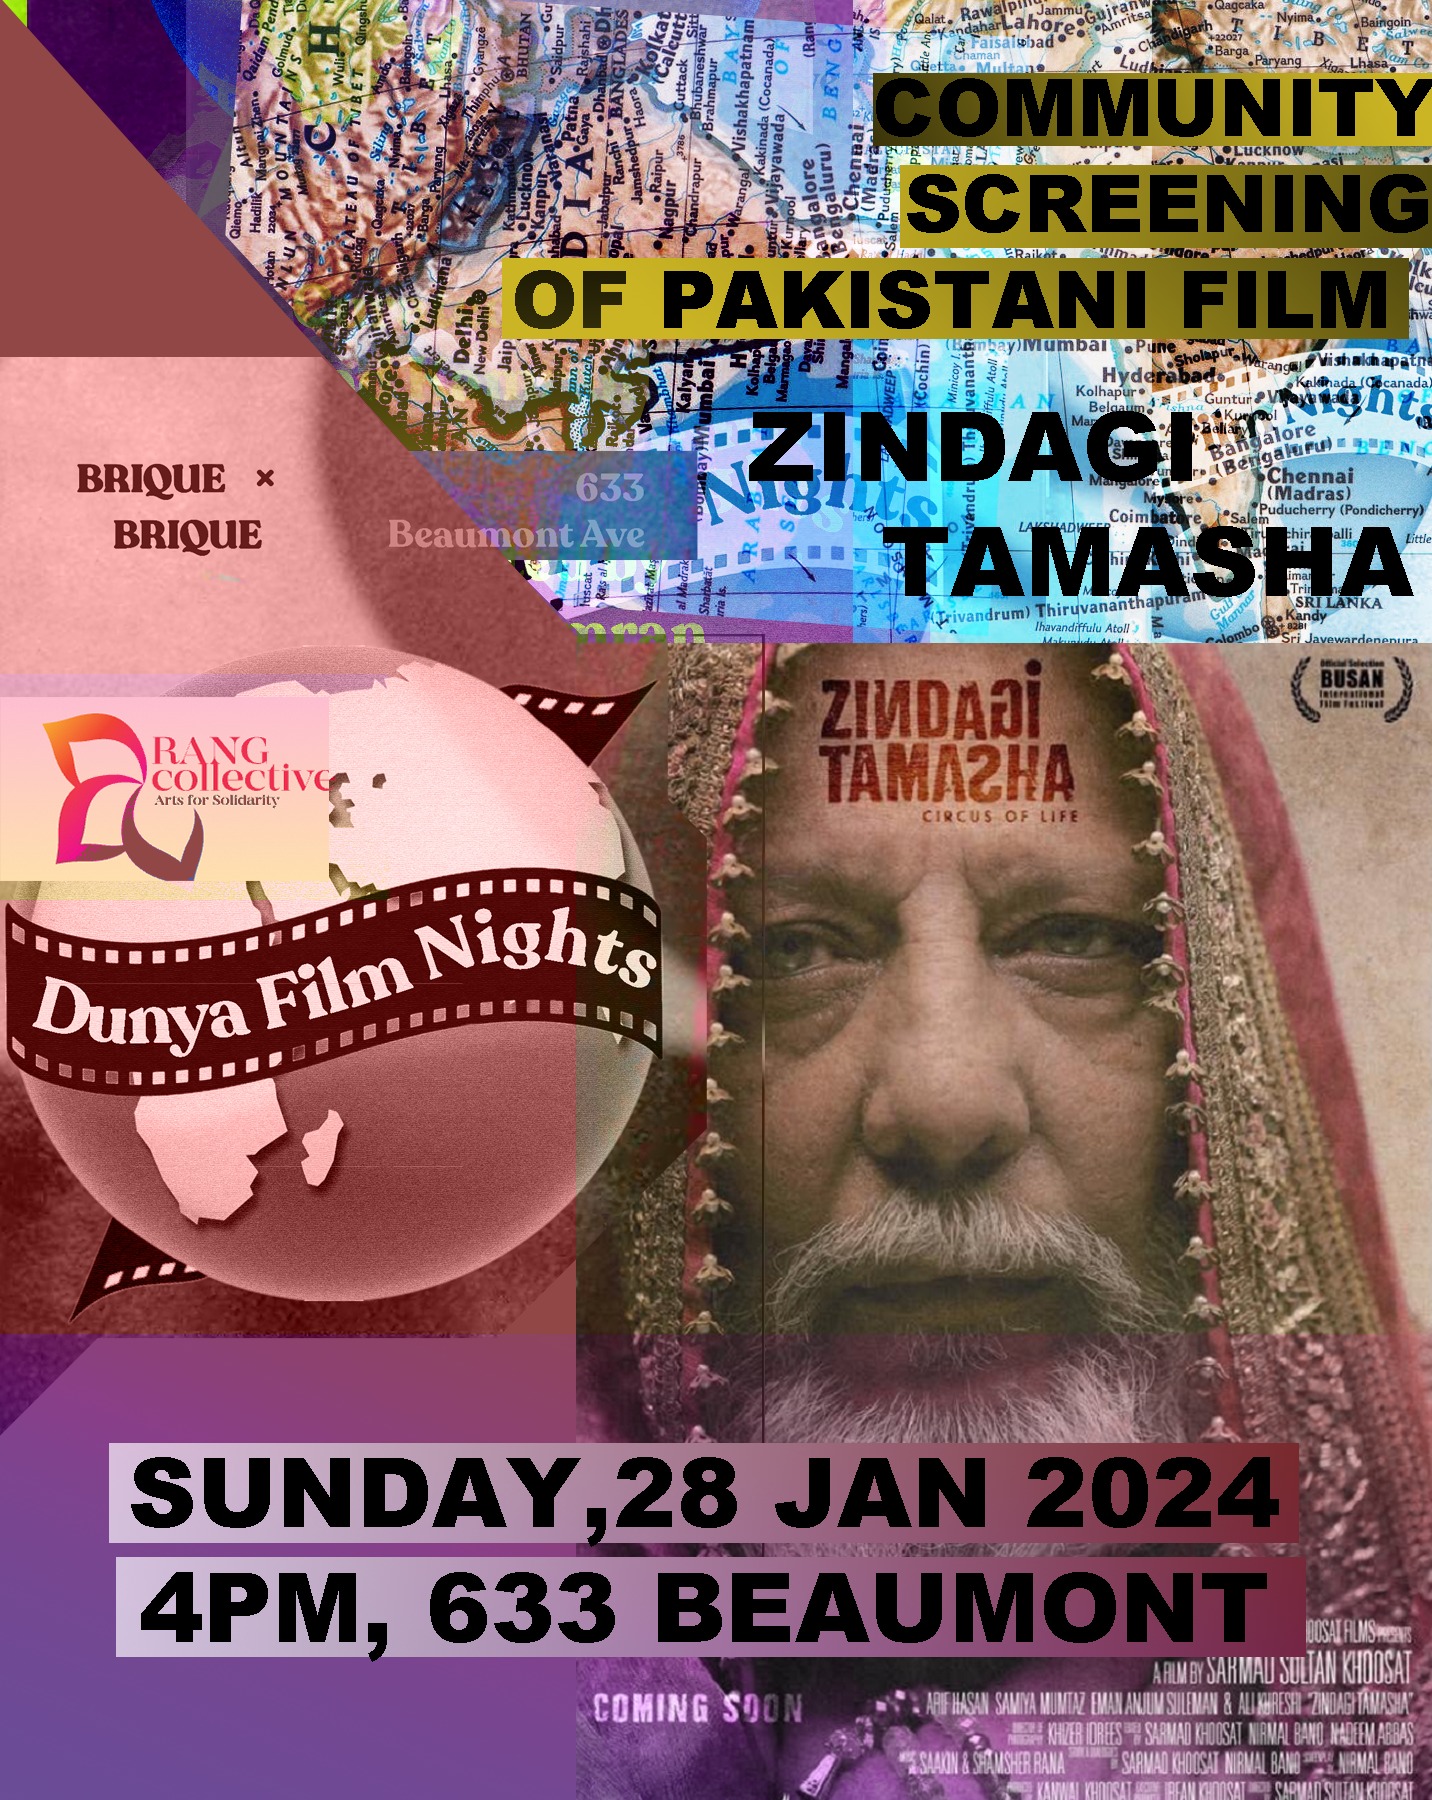 Poster for Zindagi Tamasha screening